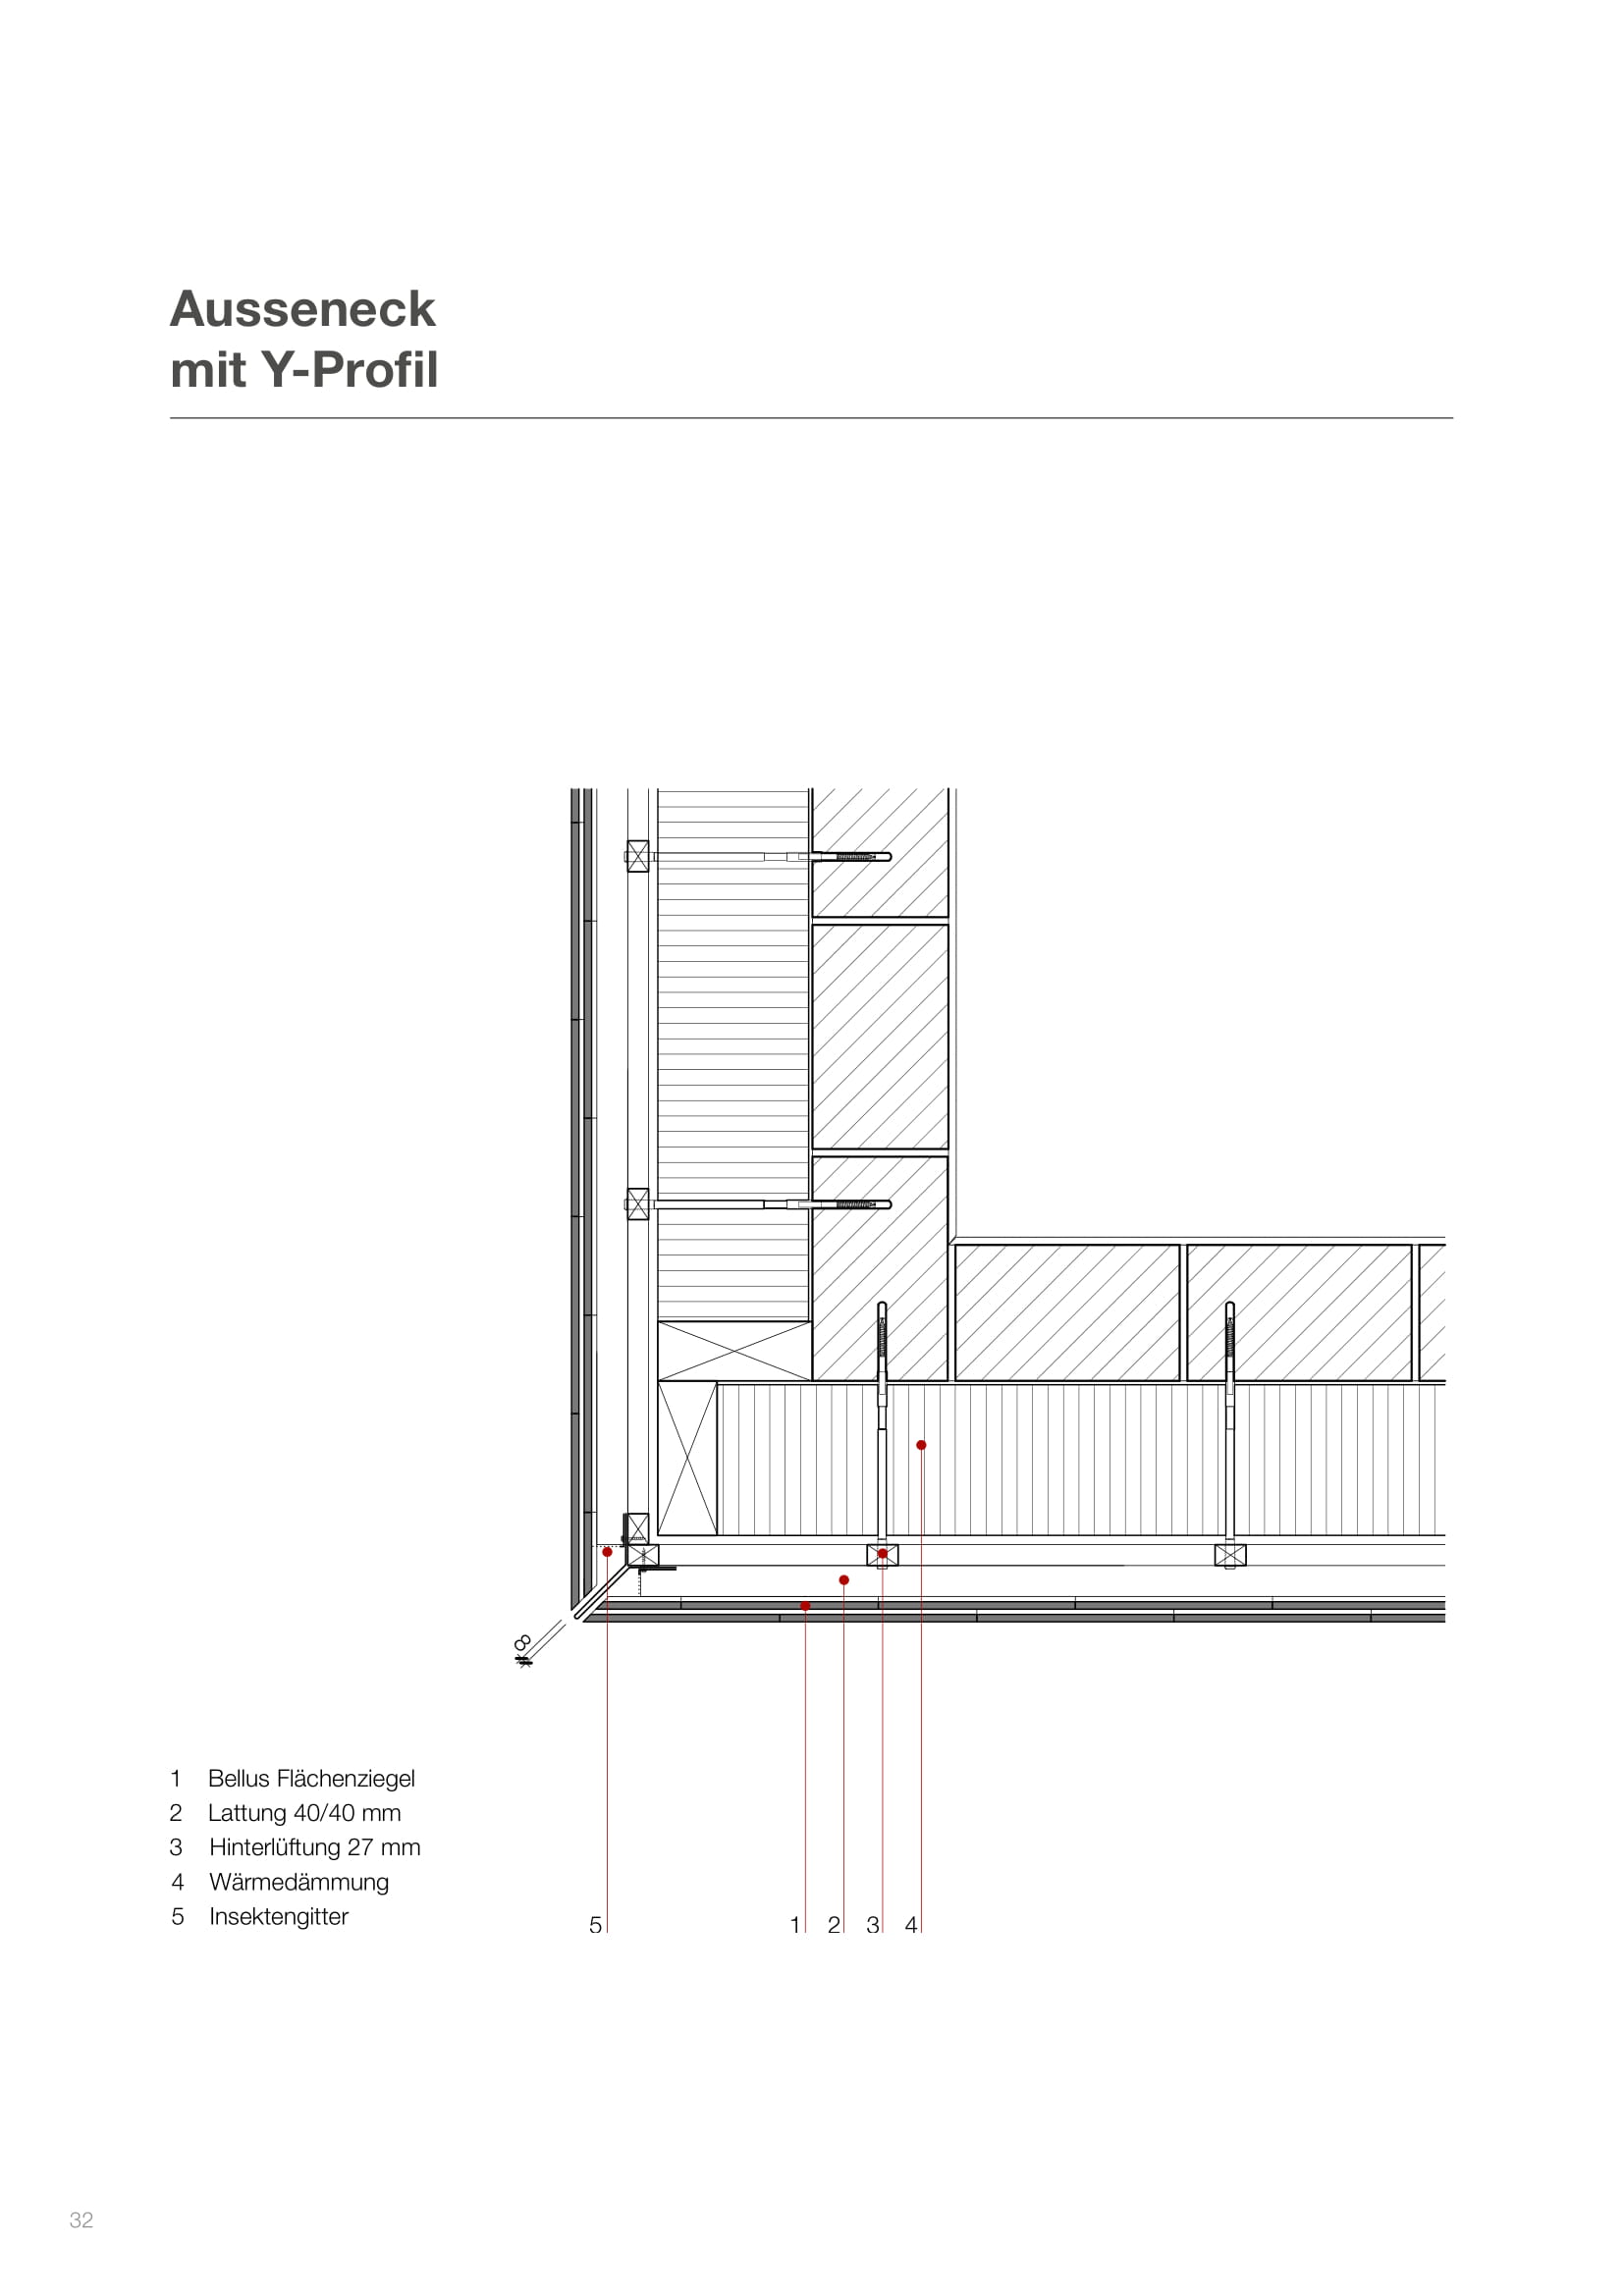 Bellus Dachziegel Planung und Ausführung -32